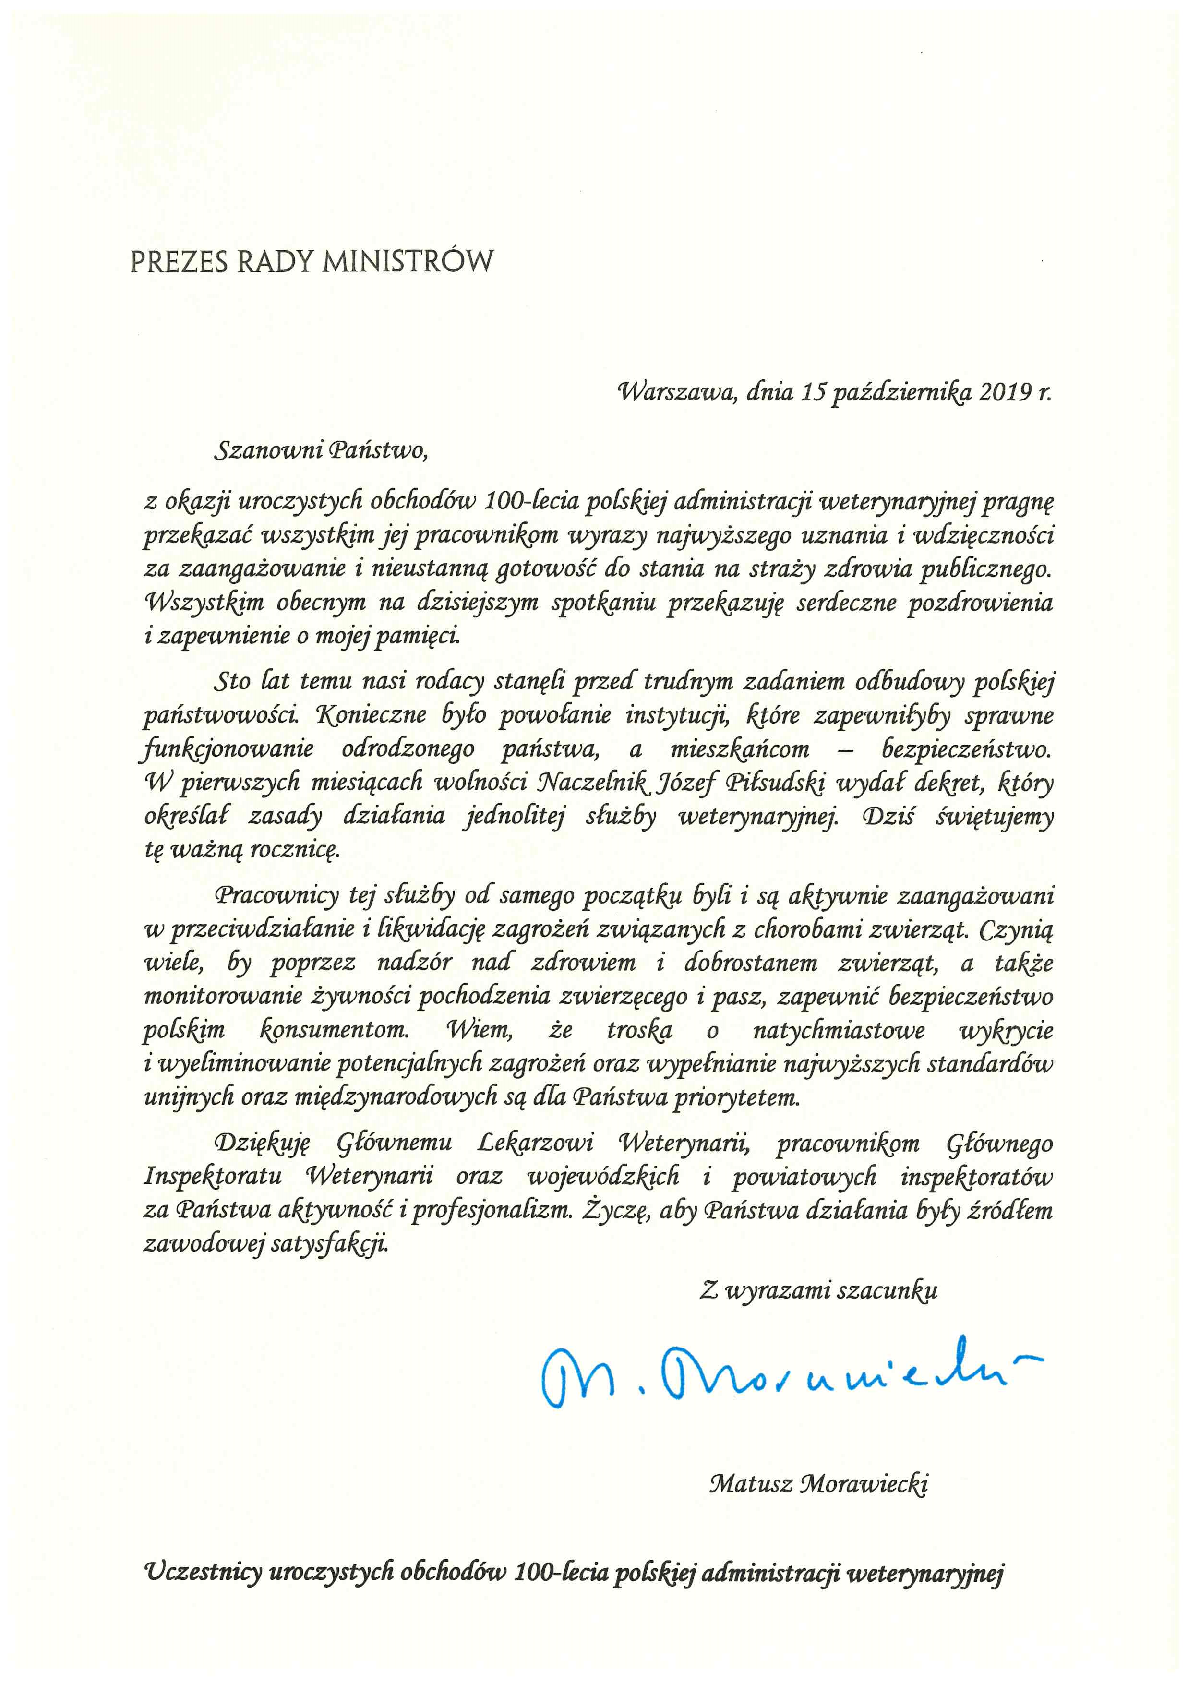 List Prezesa Rady Ministrów Mateusza Morawickiego z okazji 100-lecia Polskiej Administracji Weterynaryjnej